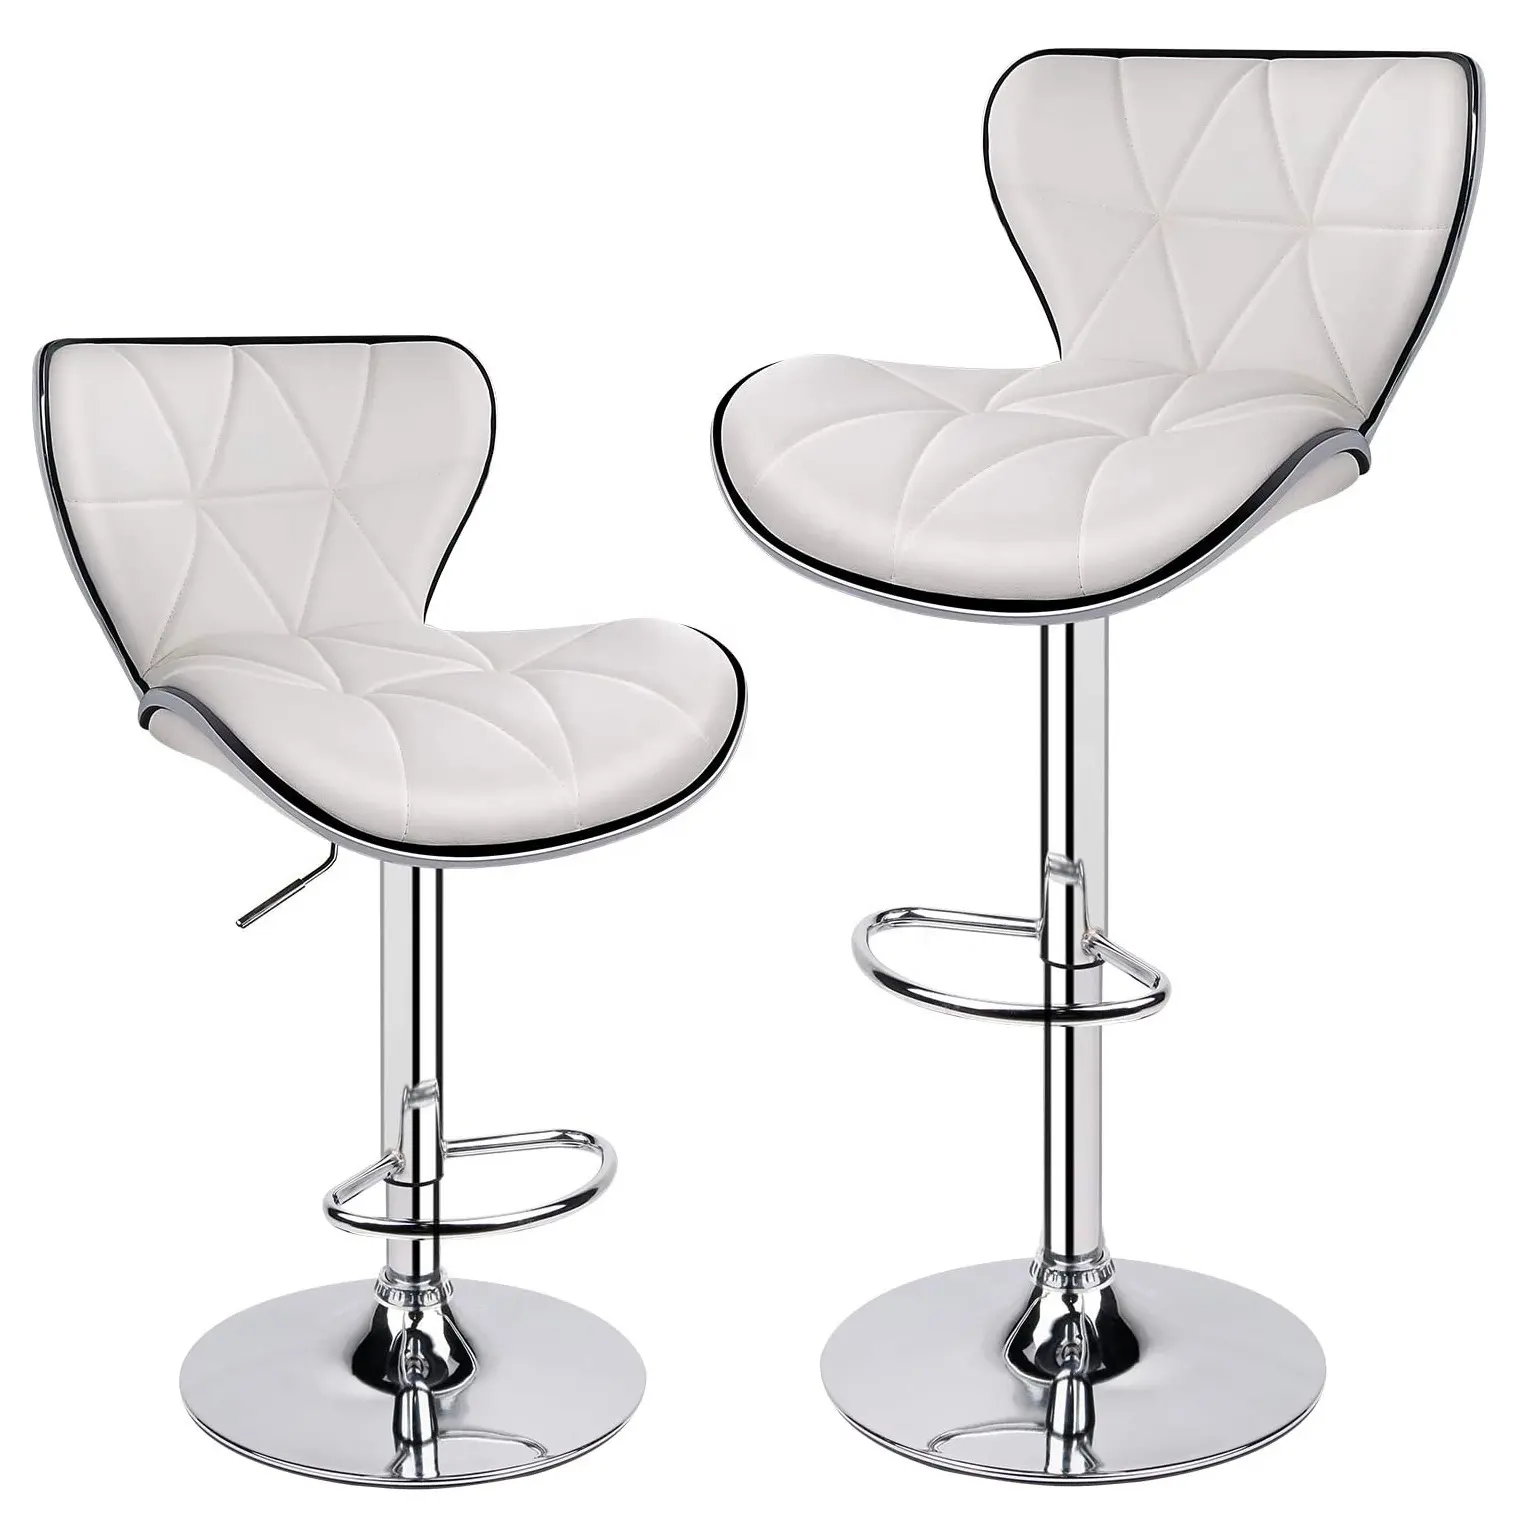 Sedia da Bar bianca in stile europeo Design personalizzato sedia da Bar con altezza del bancone Beige sedia da Bar in pelle regolabile girevole per cucina